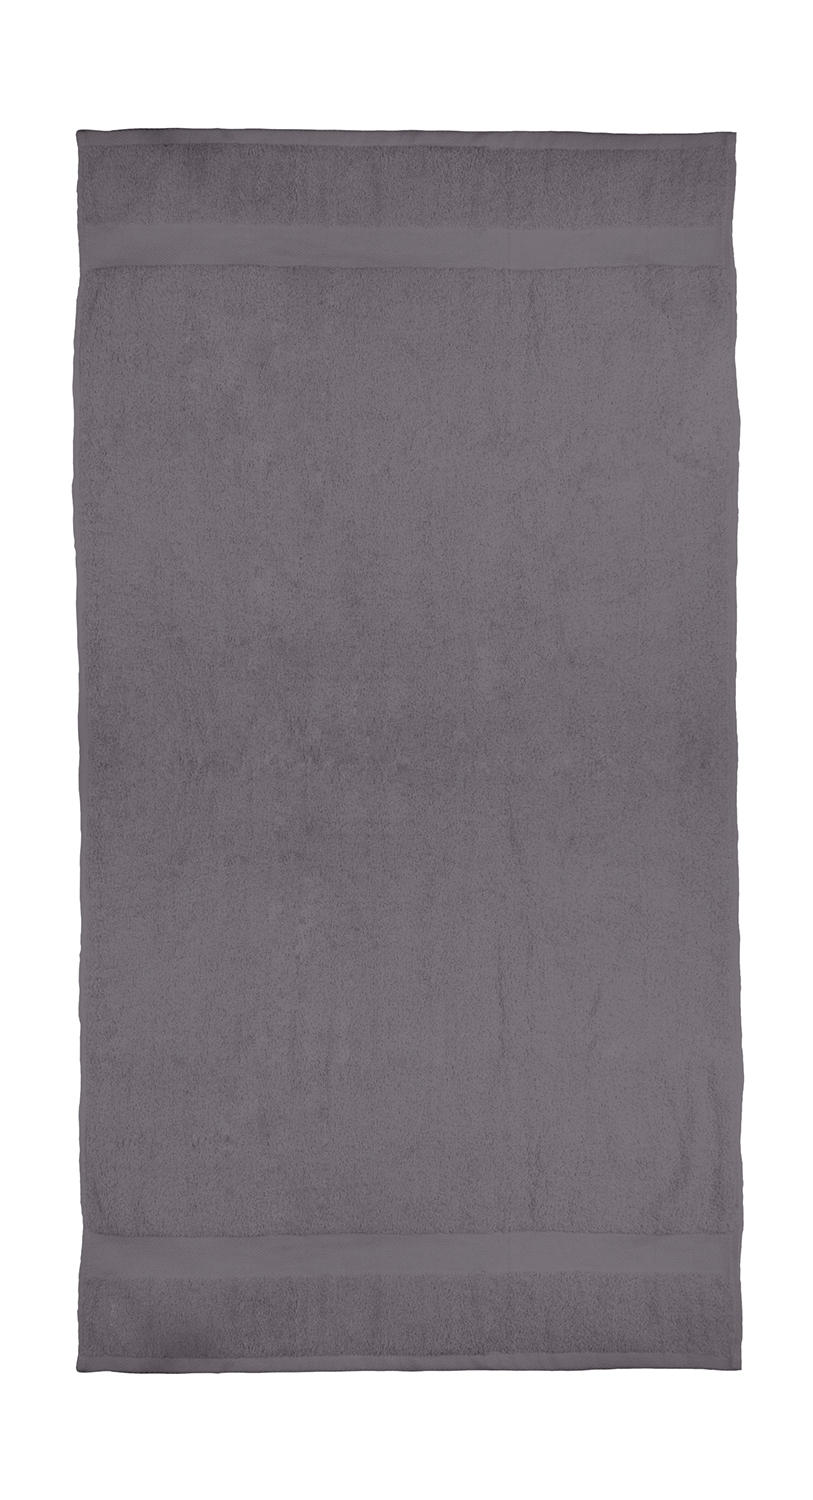  Seine Bath Towel 70x140cm in Farbe Grey